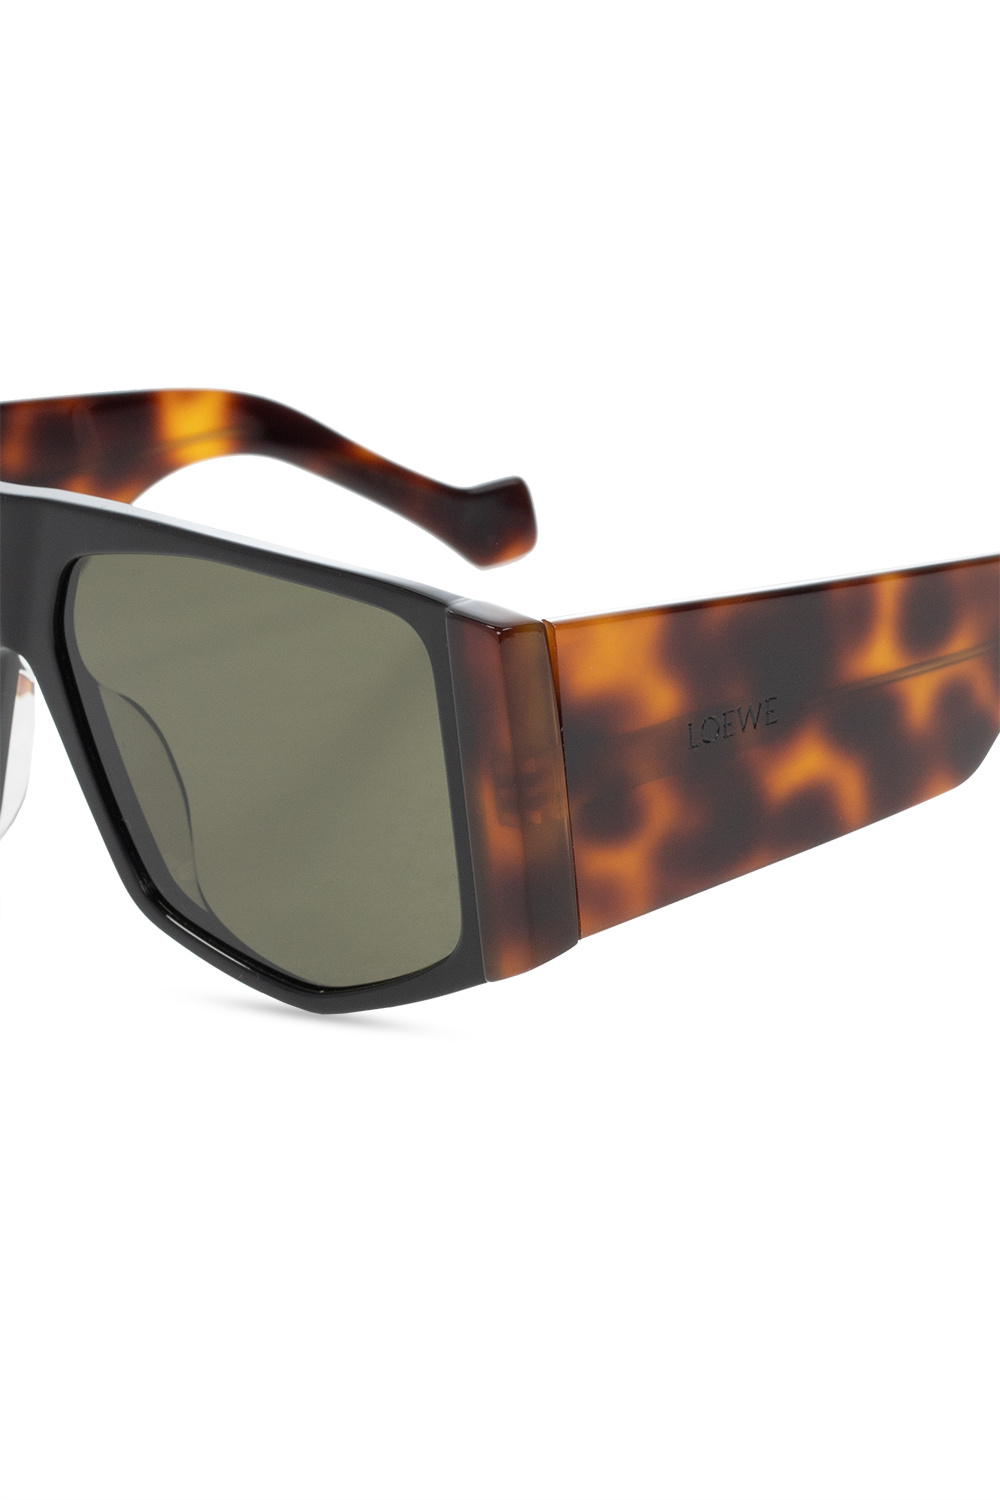 IetpShops, Ray-Ban Polarized Aviator Sunglasses